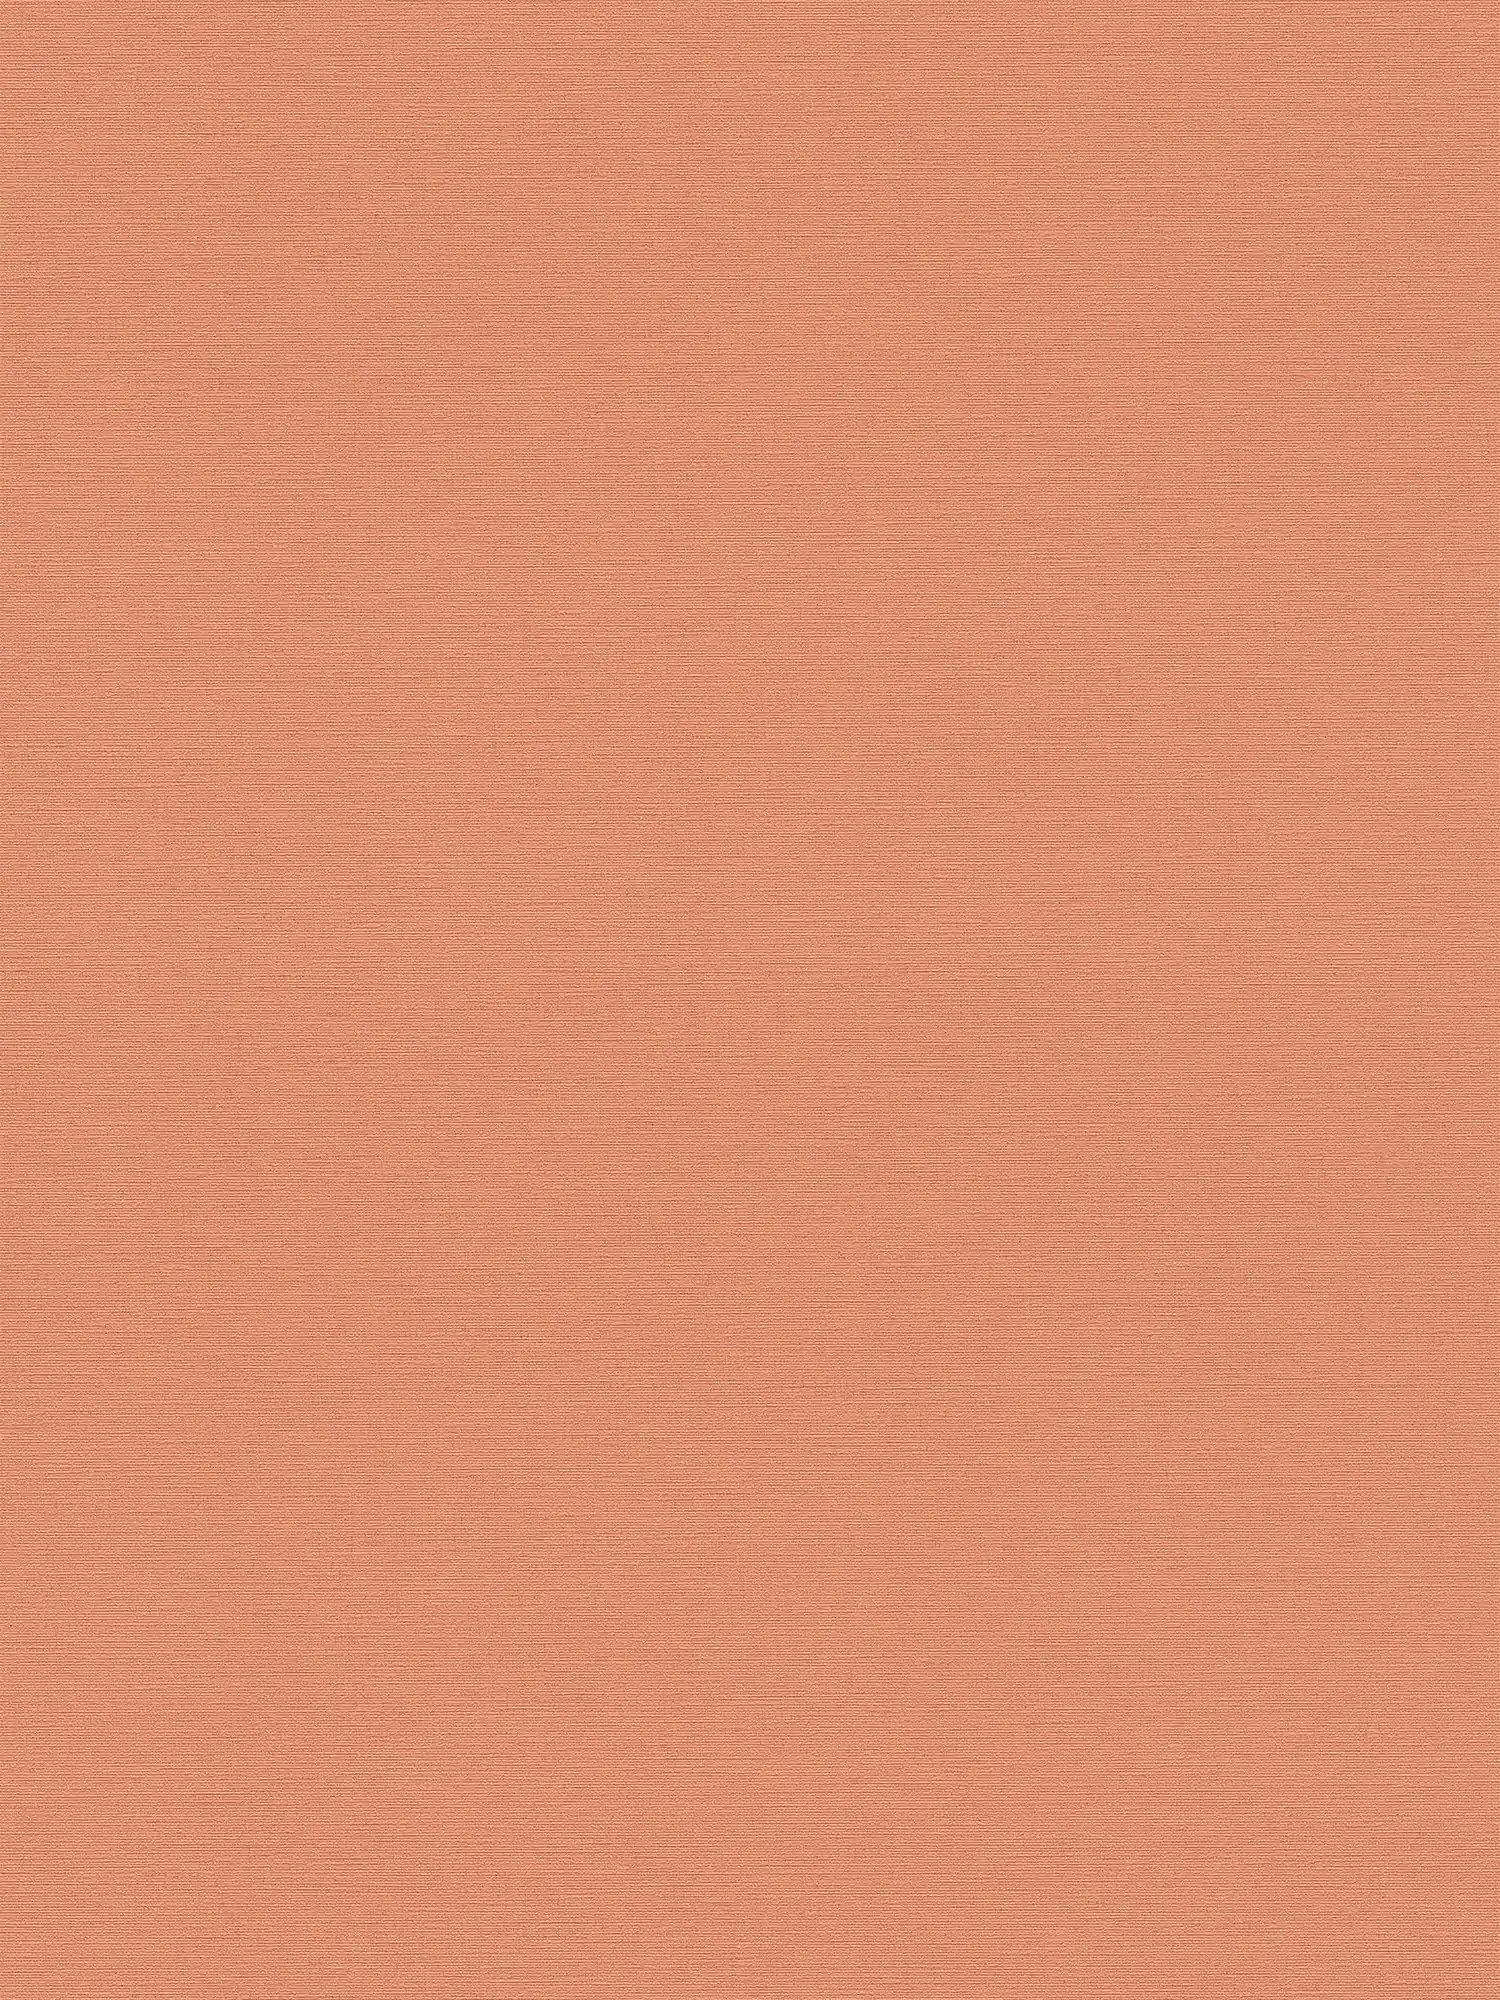 Linen look wallpaper in a subtle style - orange
